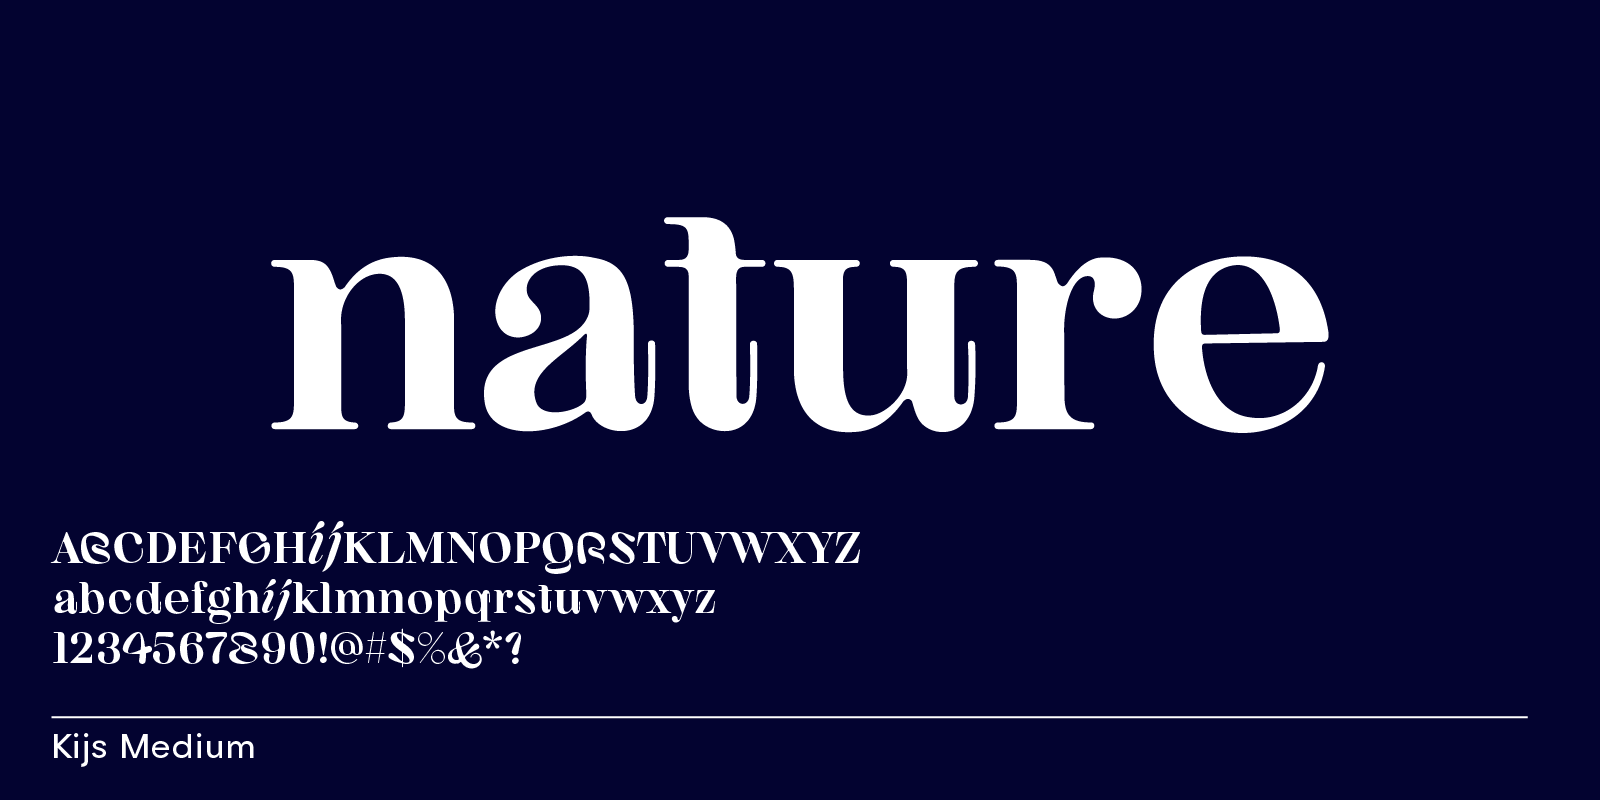 Kijs, nature font